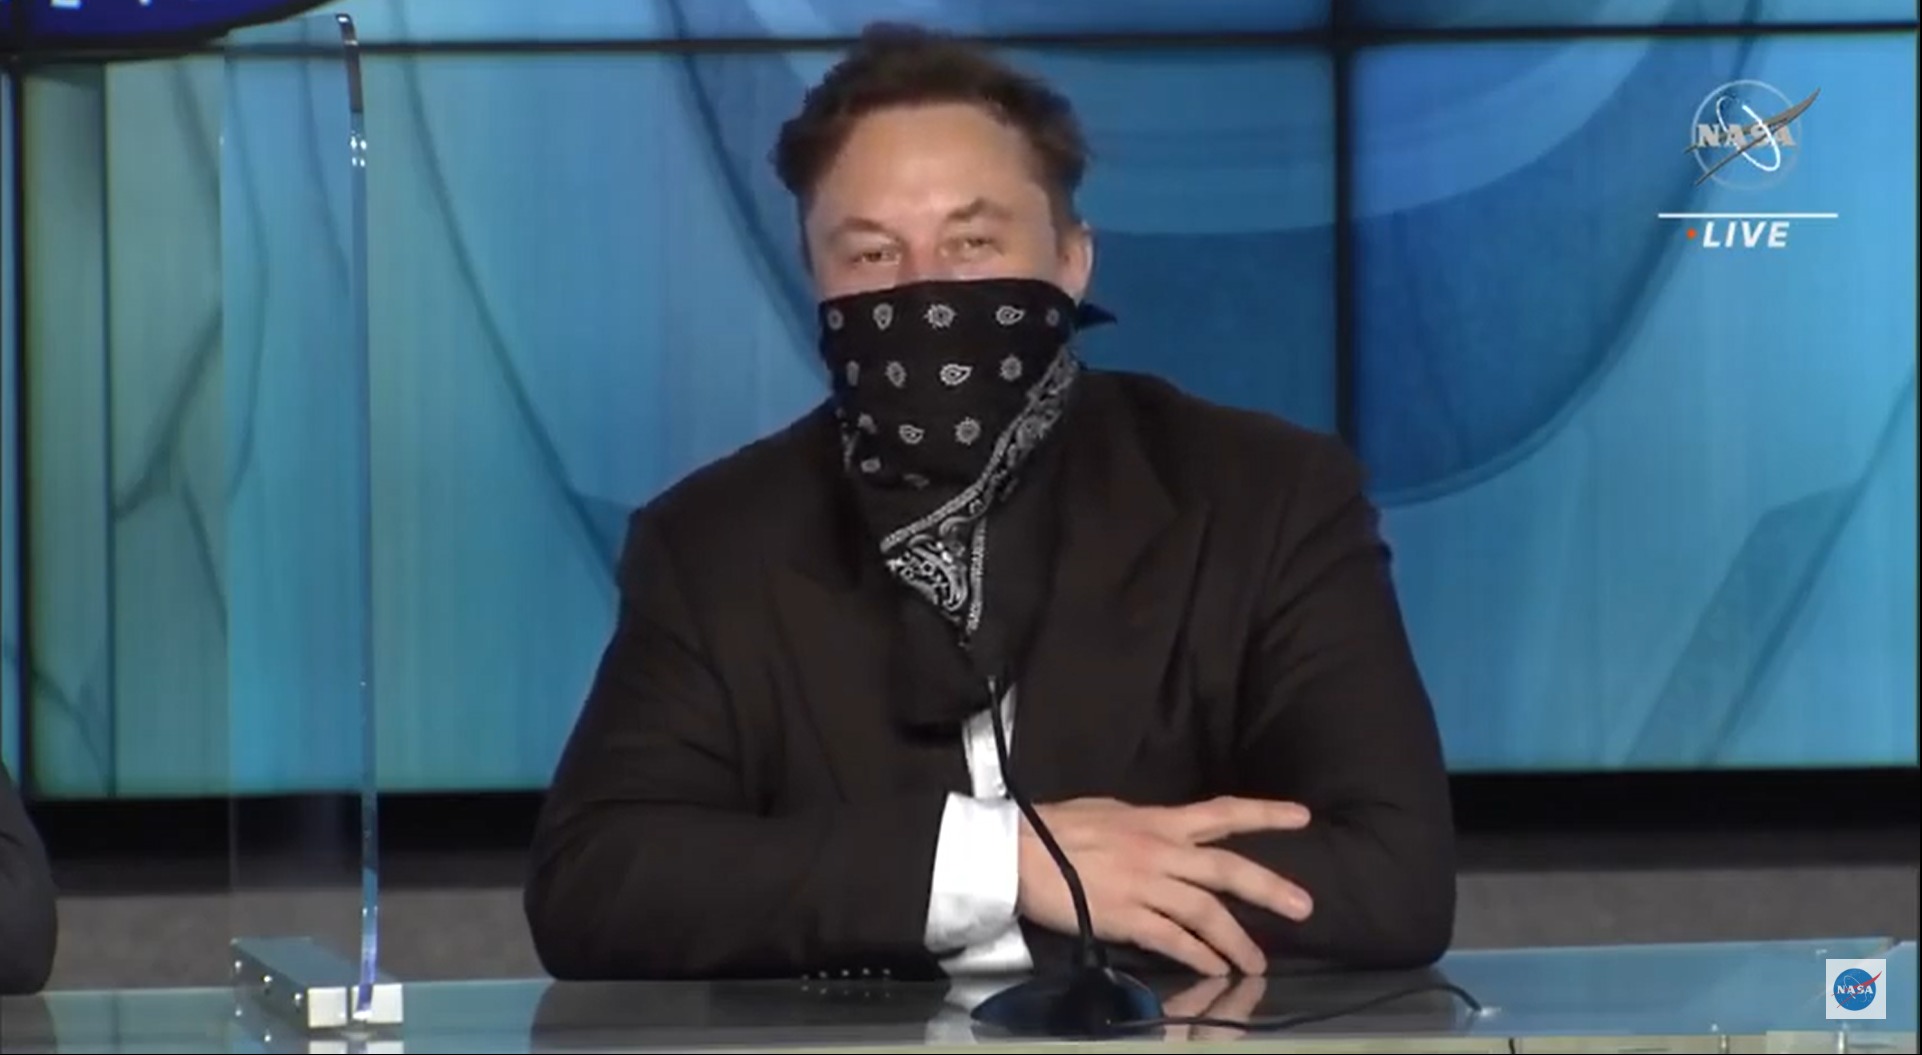 La impactante confesión de Elon Musk al presentar Saturday Night Live